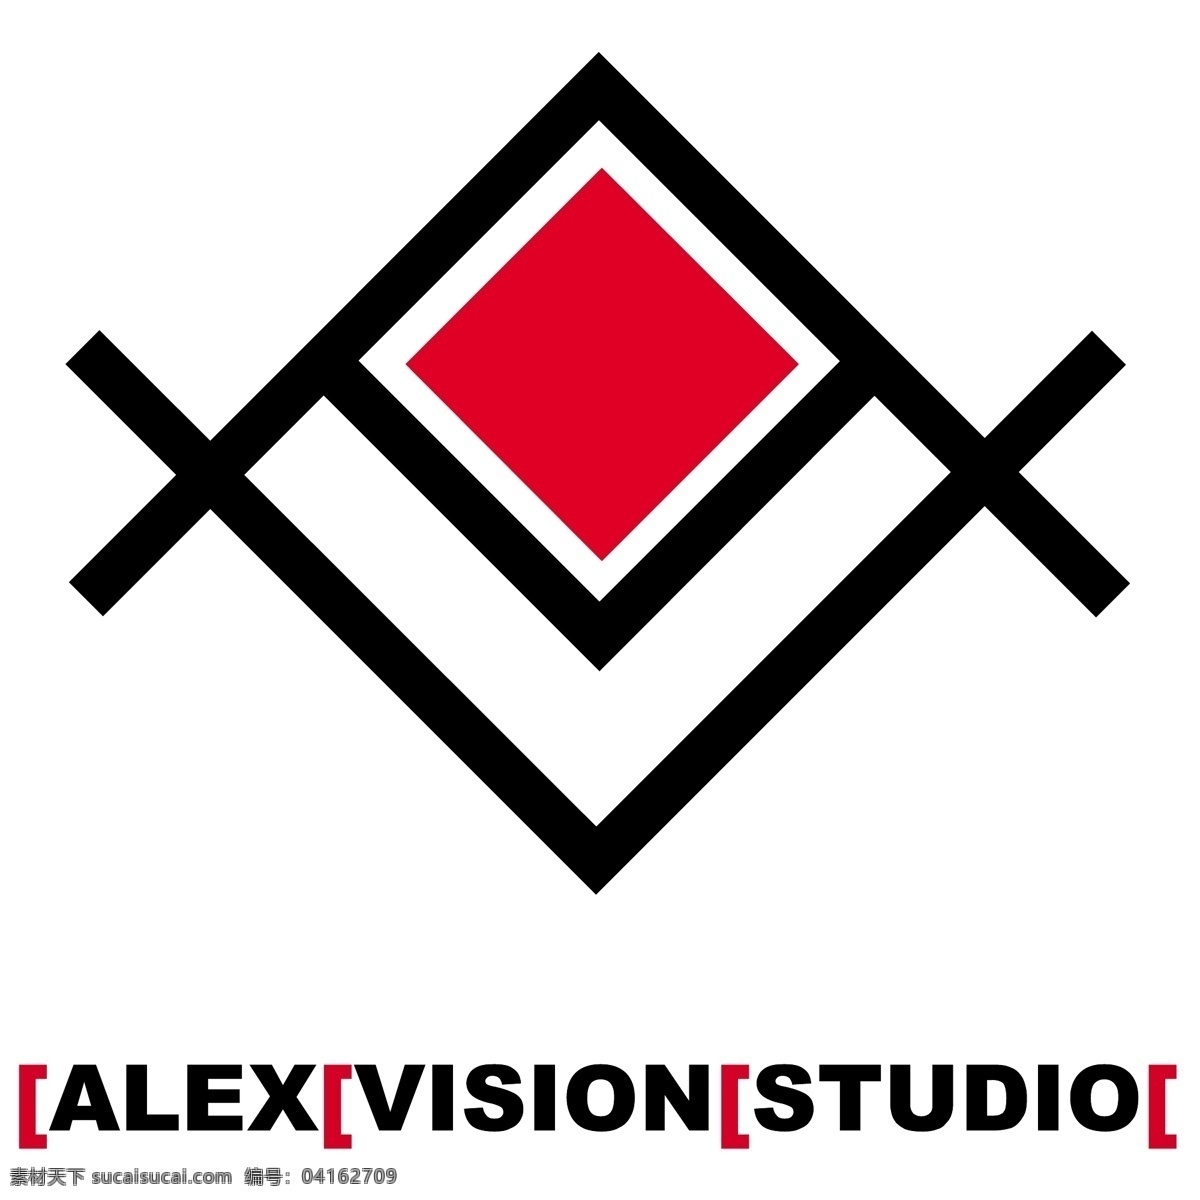 亚历克斯 视觉 标识 公司 免费 品牌 品牌标识 商标 矢量标志下载 免费矢量标识 矢量 psd源文件 logo设计